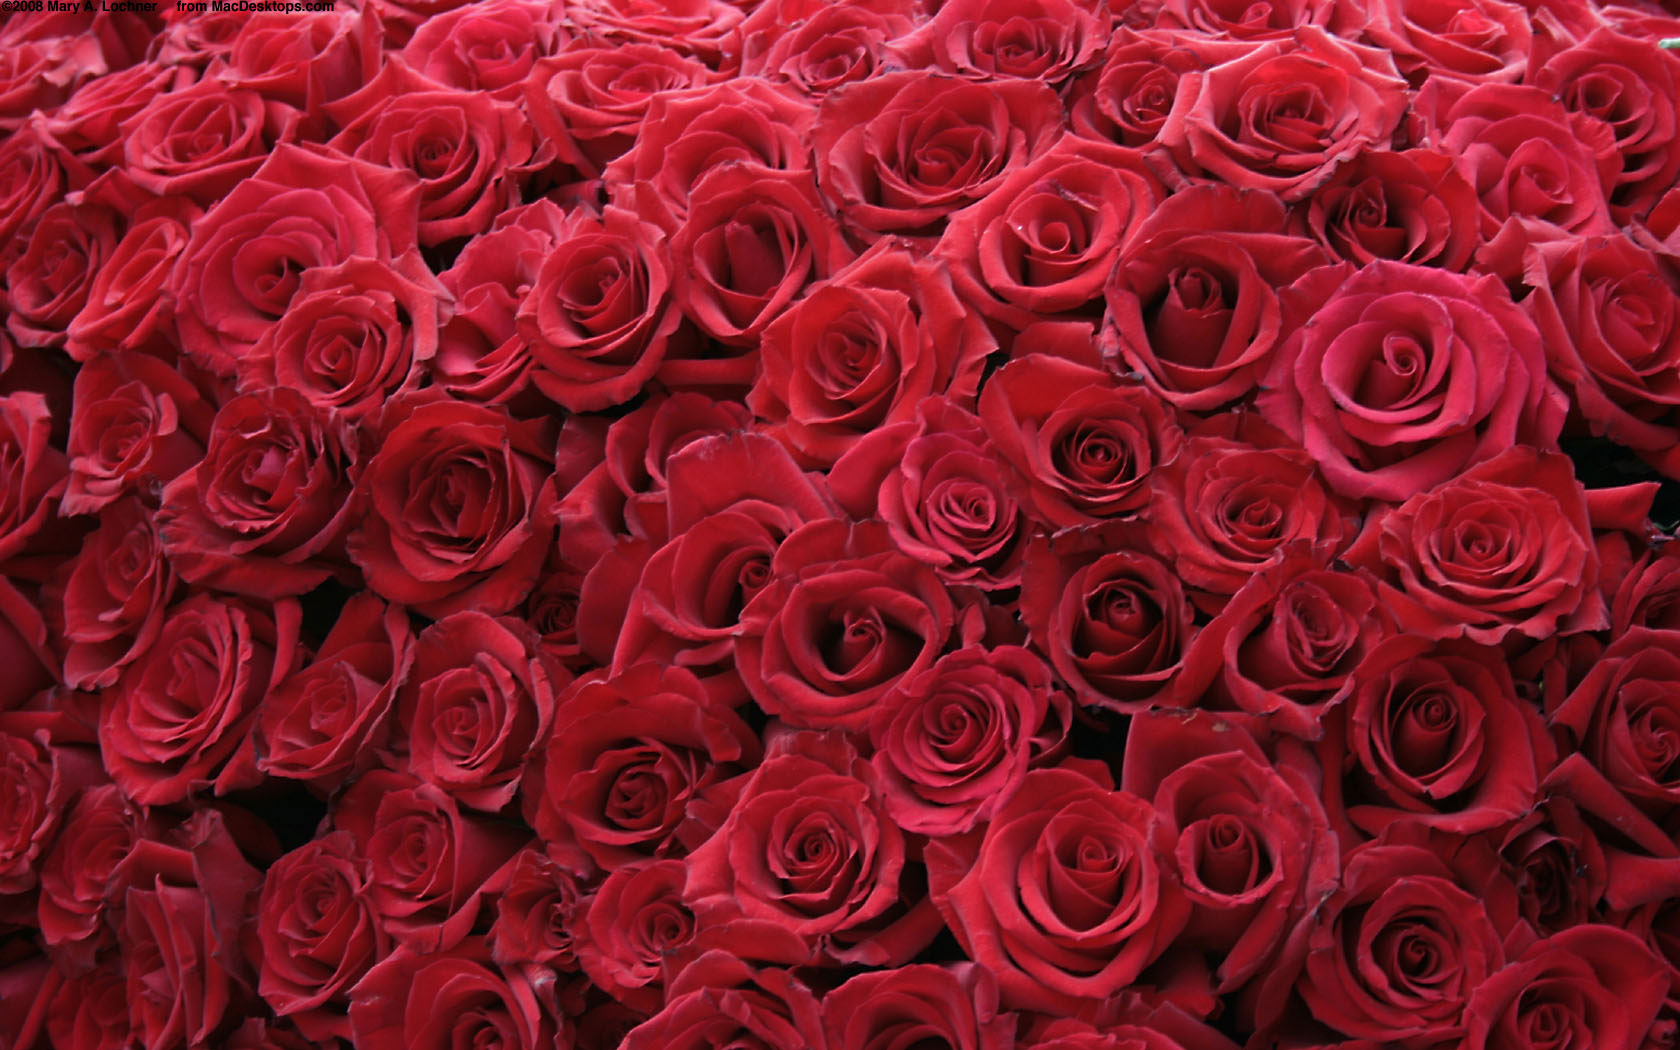 rose wallpaper,flower,rose,garden roses,flowering plant,red